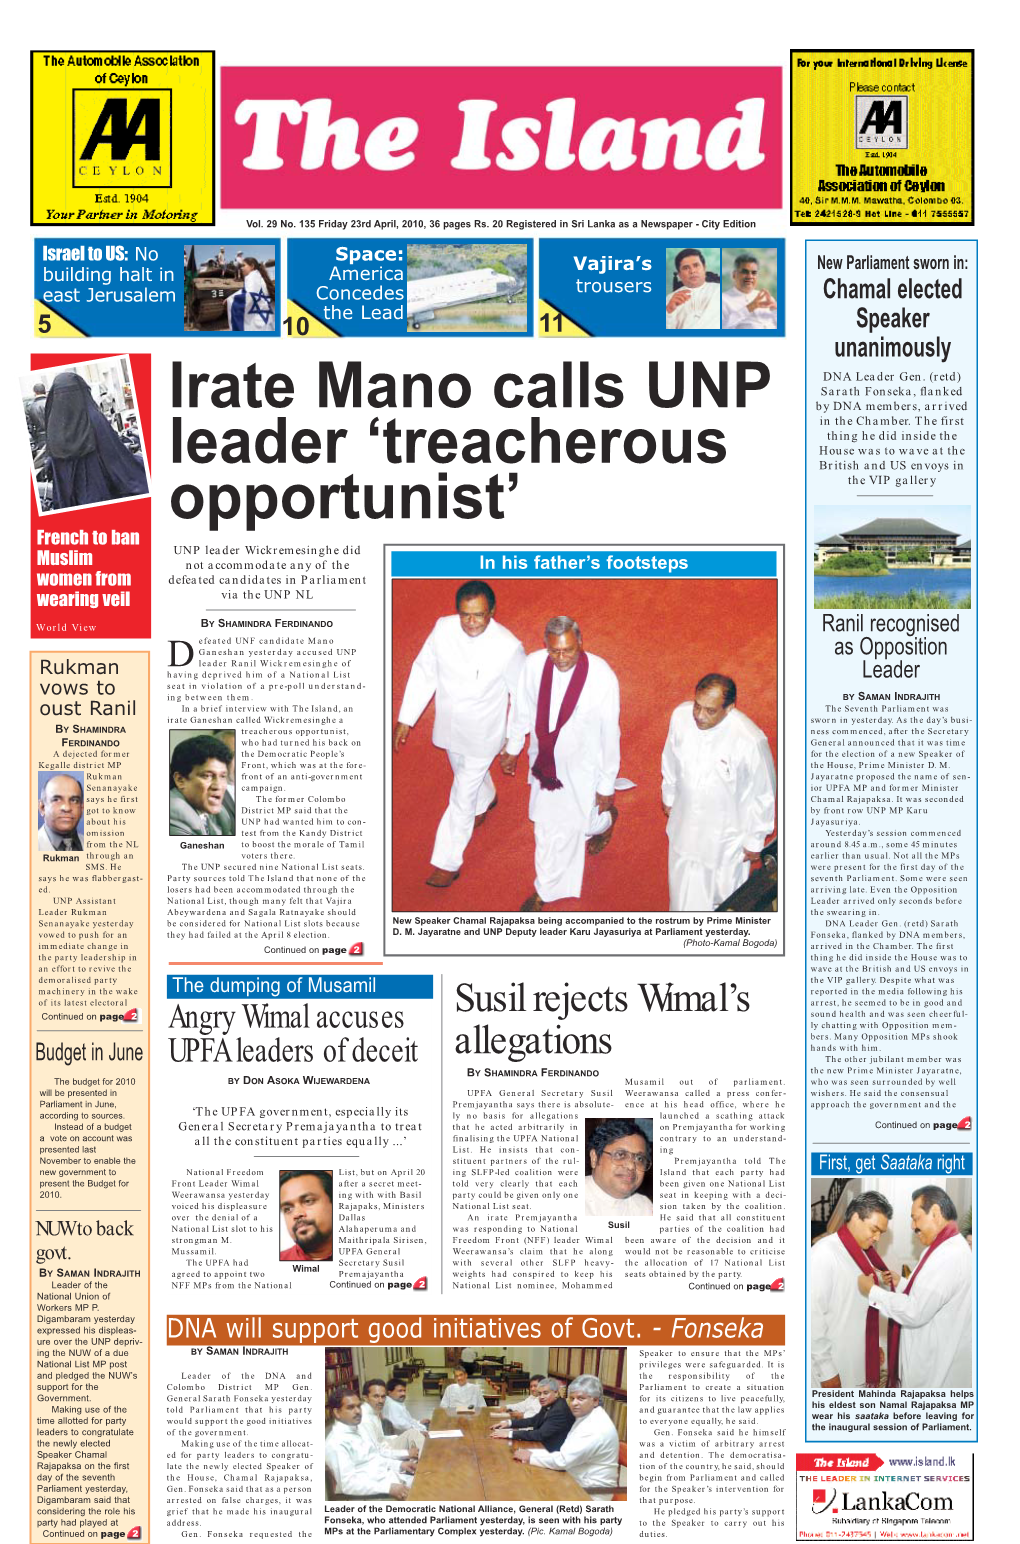 Irate Mano Calls UNP Leader